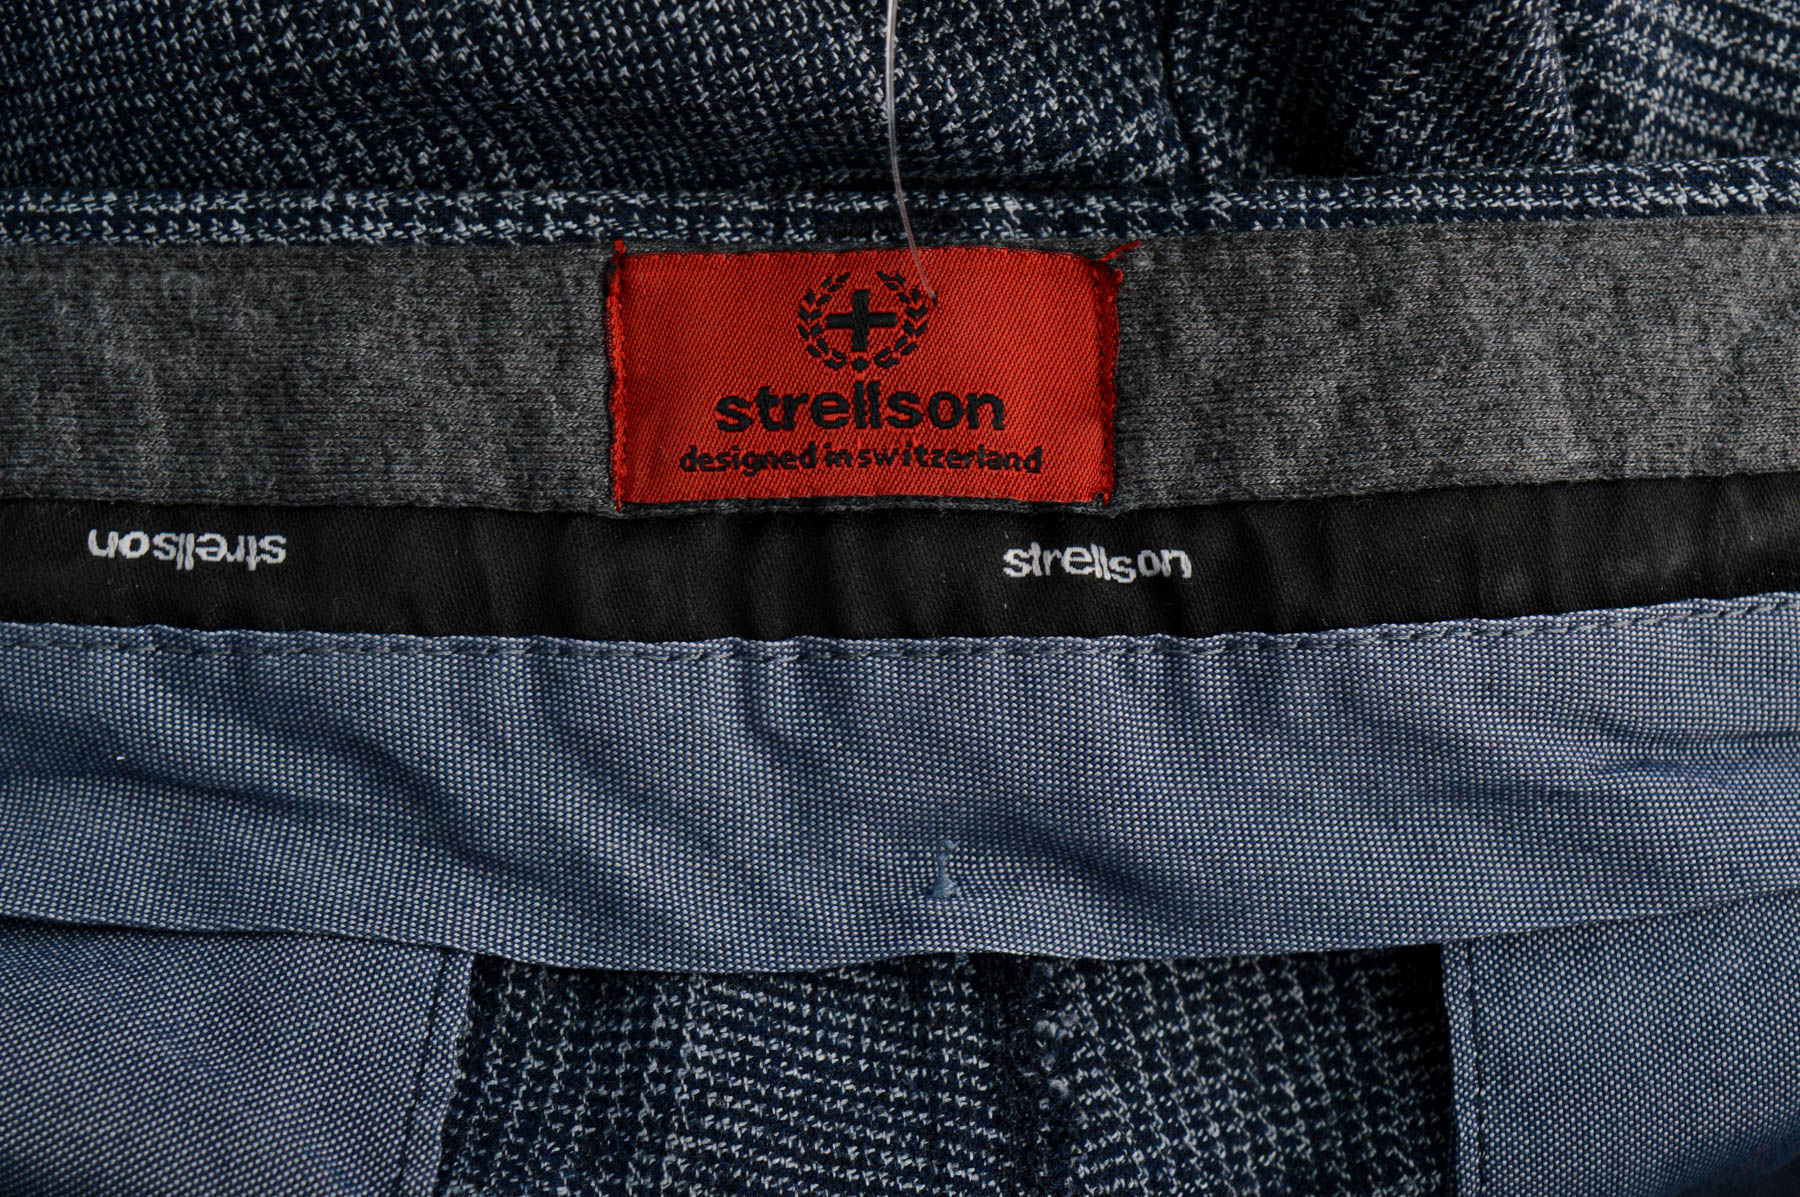 Men's trousers - Strellson - 2